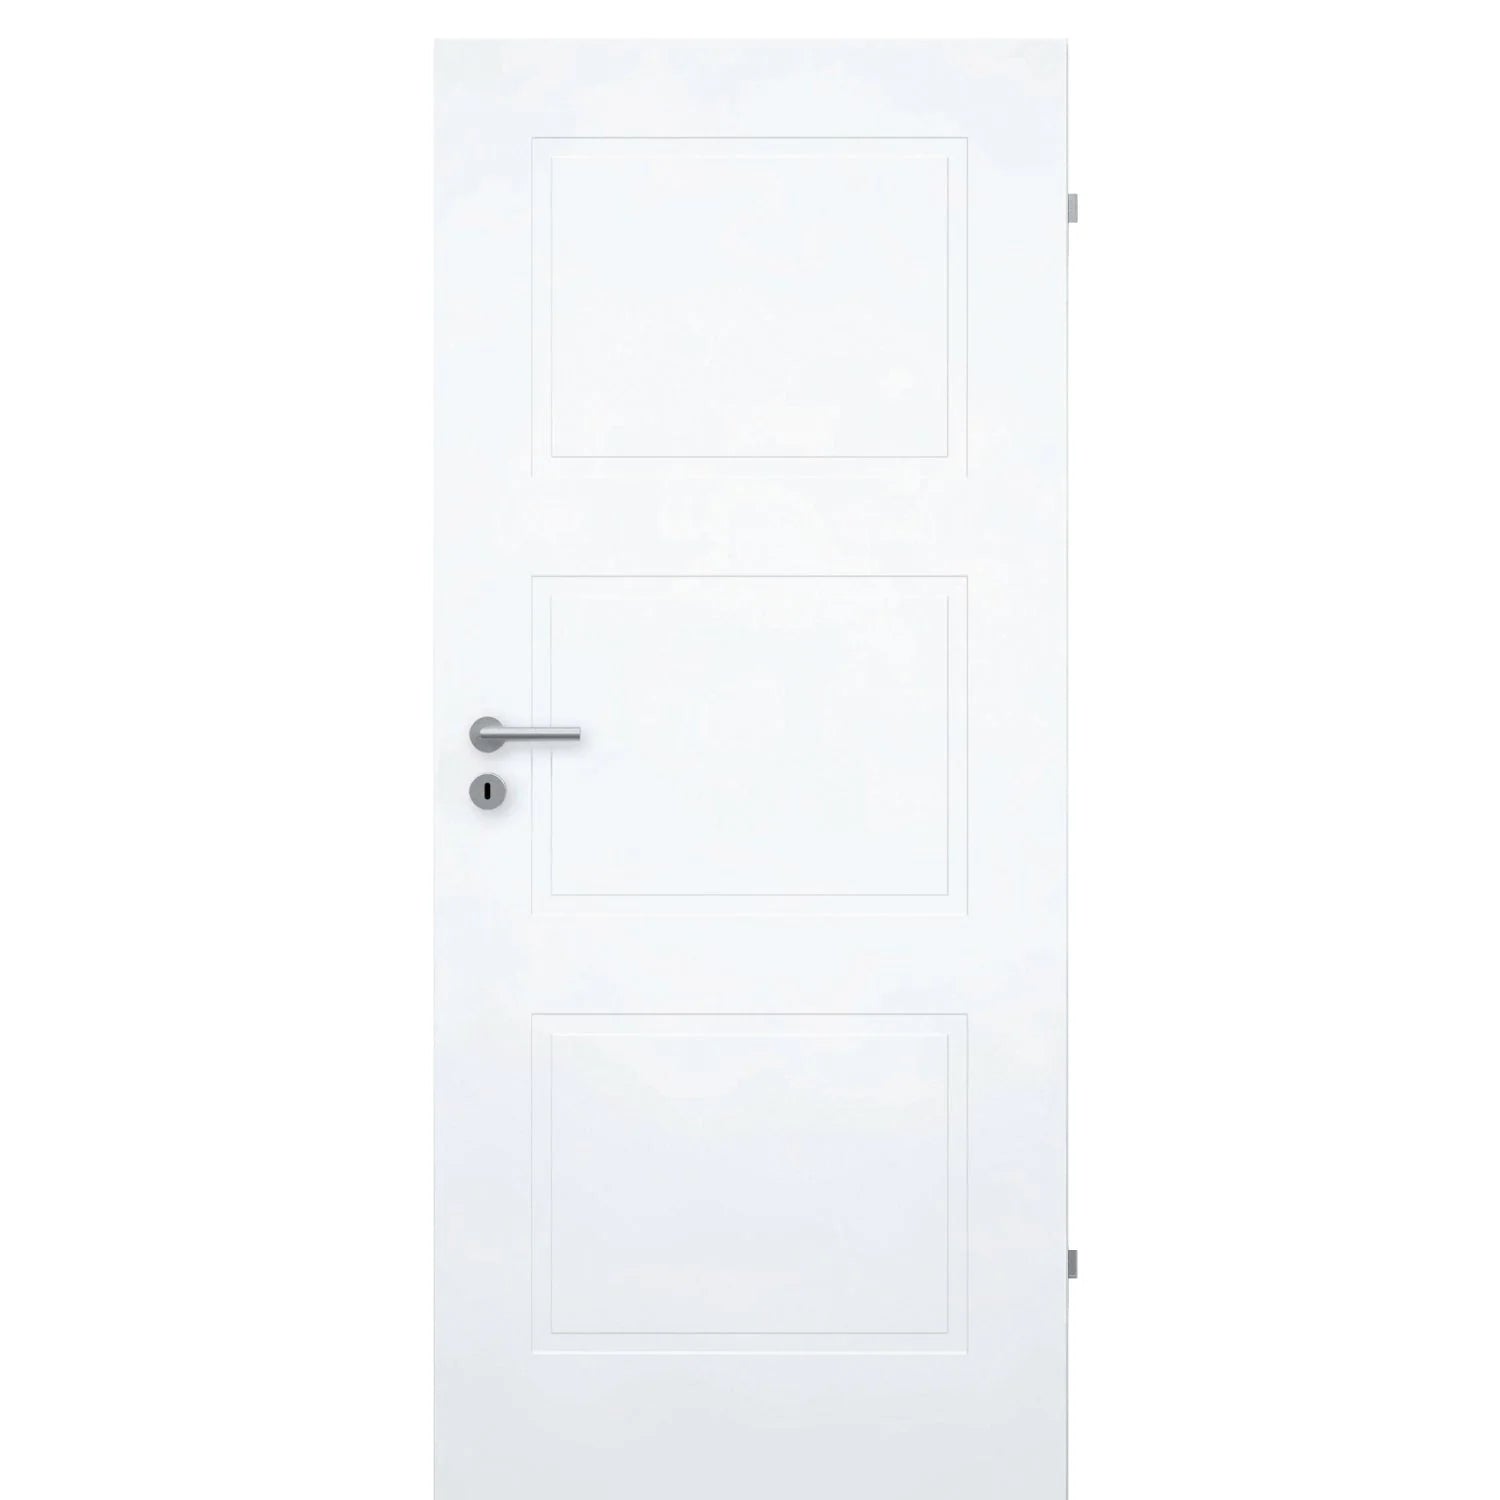 Zimmertür brillant-weiß Stiltür mit 3 Kassetten Designkante - Modell Stiltür M33